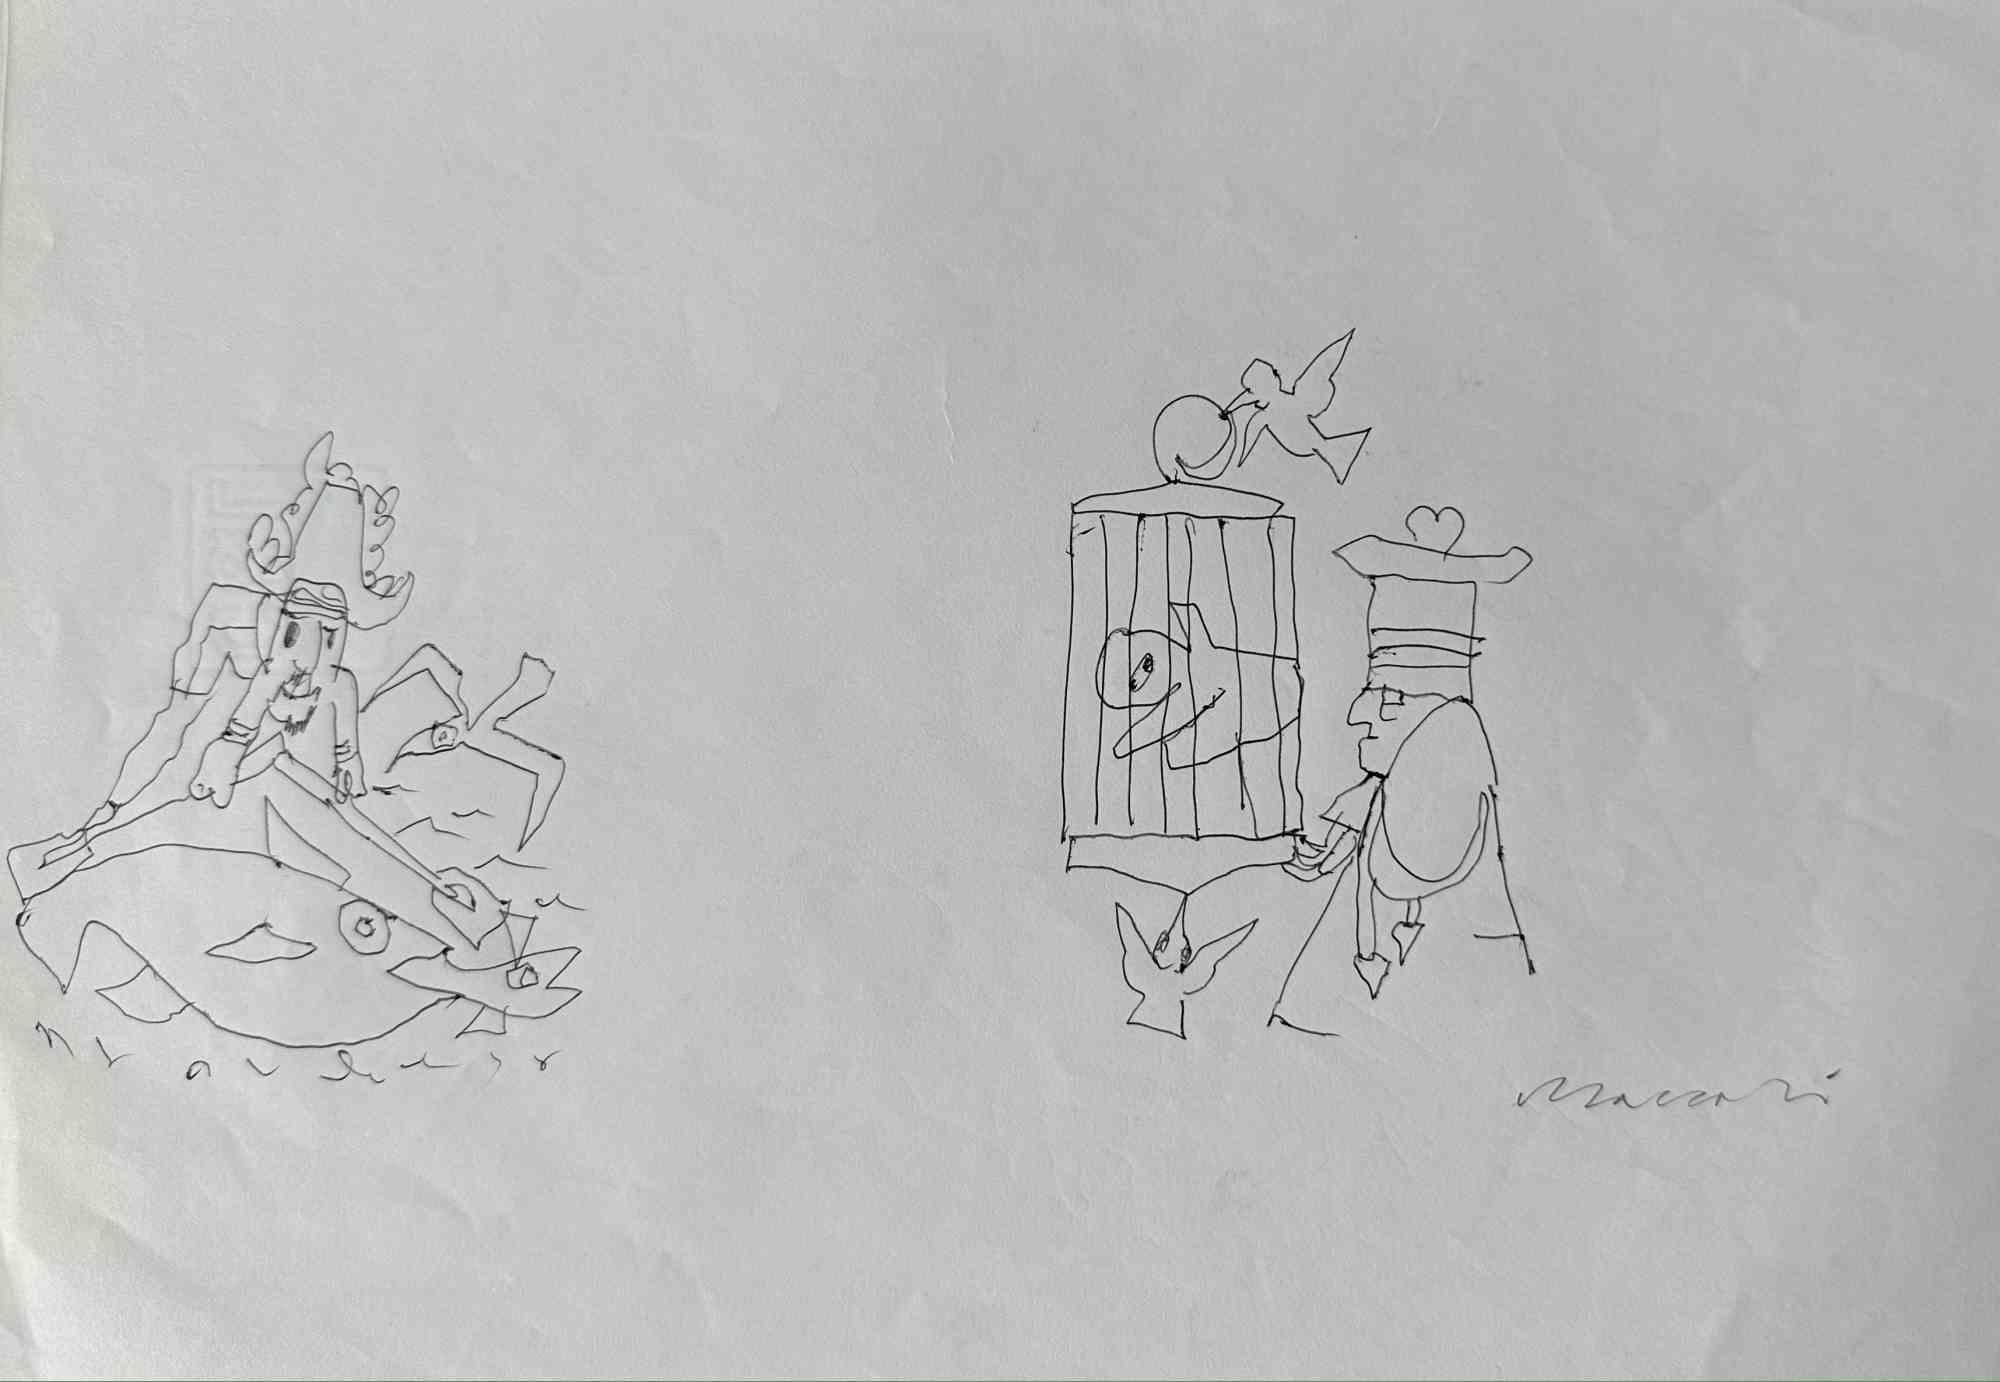 King of the Hearts ist eine Federzeichnung von Mino Maccari  (1924-1989) in den 1960er Jahren.

Handsigniert auf der Unterseite.

Gute Bedingungen.

Mino Maccari (Siena, 1924-Rom, 16. Juni 1989) war ein italienischer Schriftsteller, Maler, Graveur